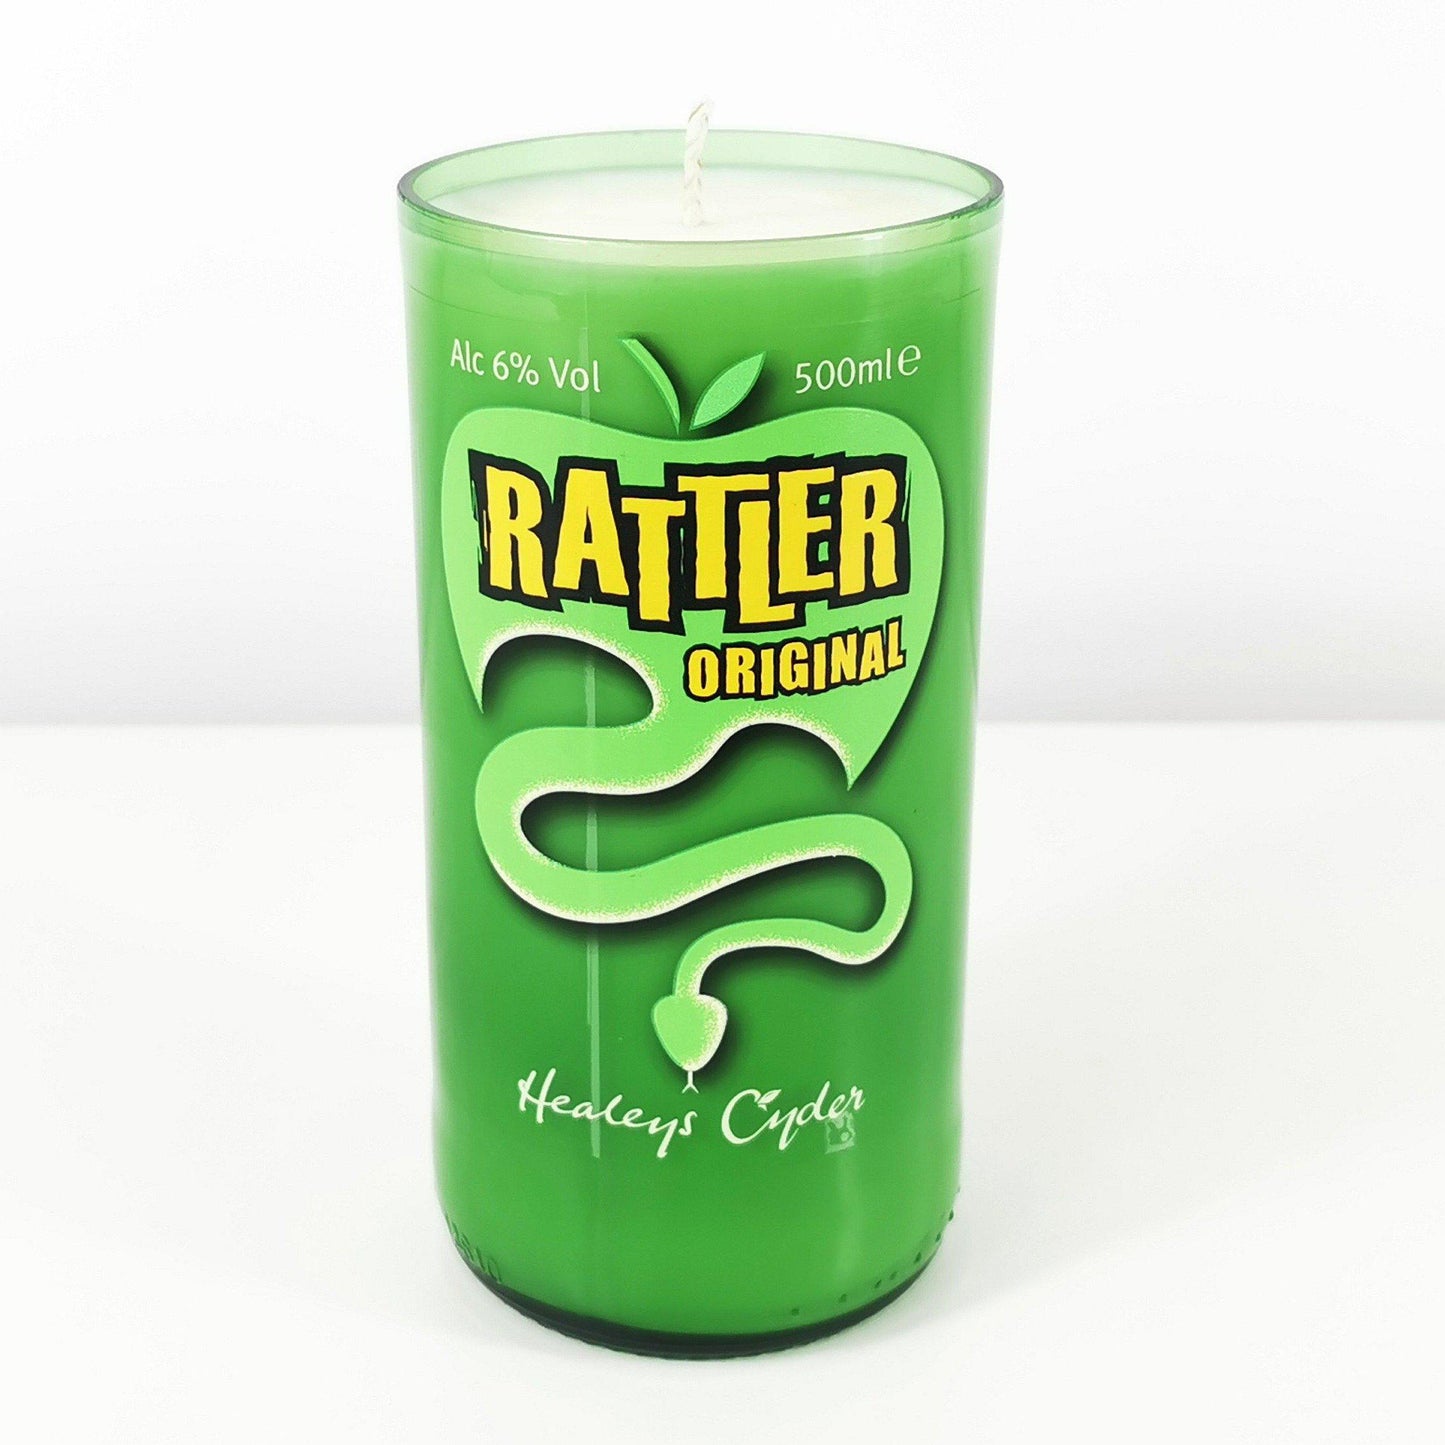 Rattler Original Cider Bottle Candle-Cider Bottle Candles-Adhock Homeware